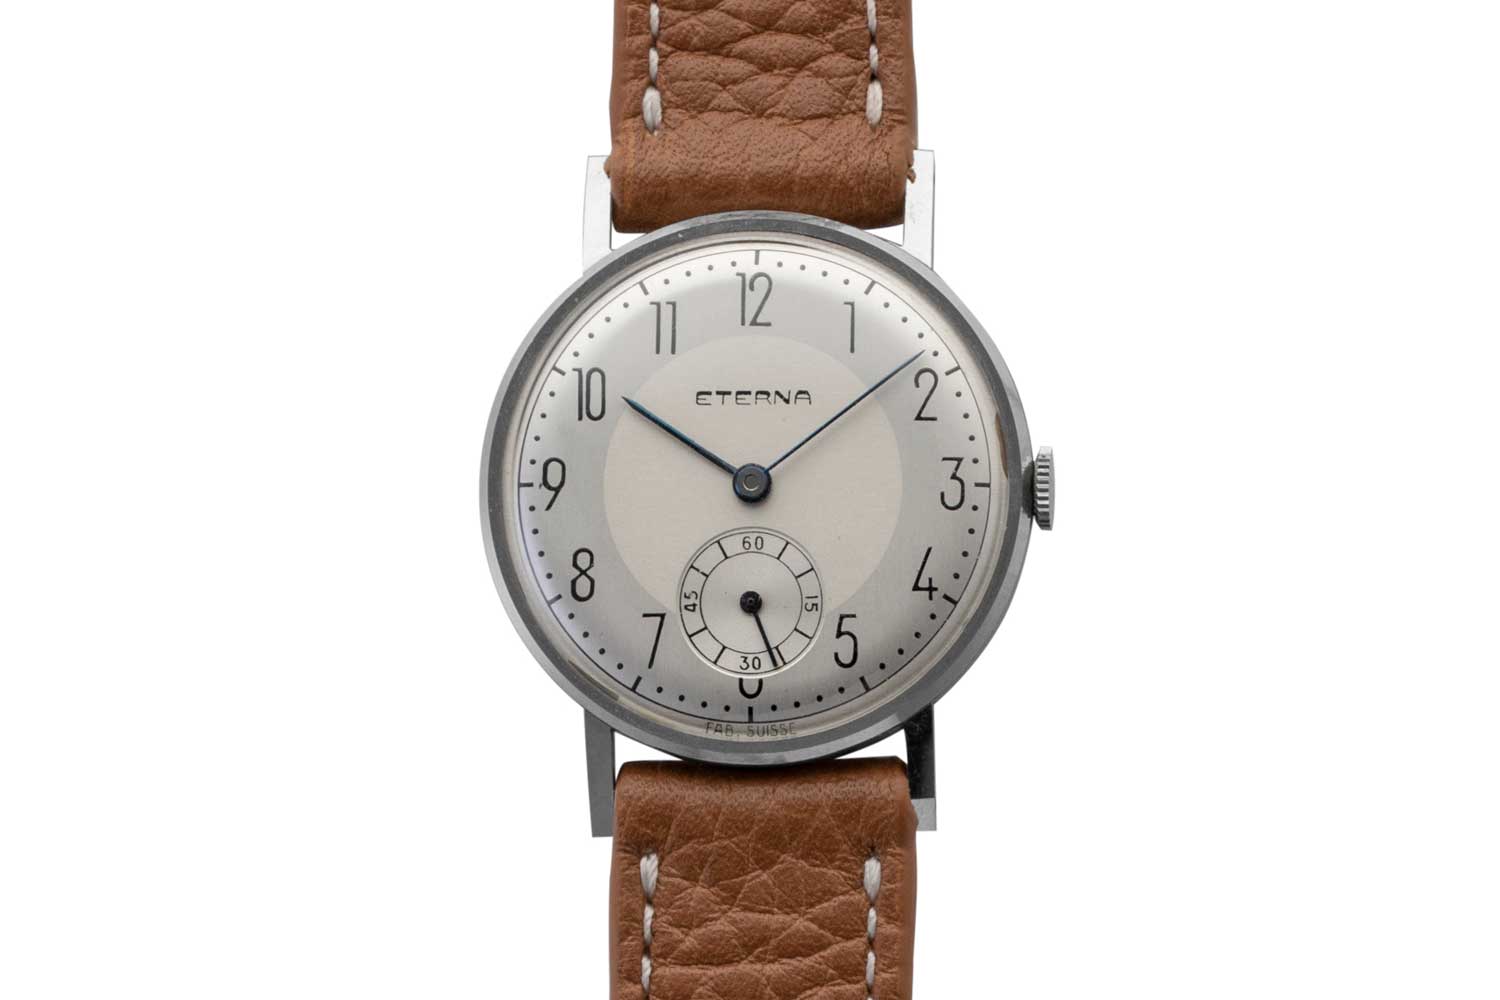 Reloj de vestir Eterna de 30 mm, década de 1950 (© Revolution).